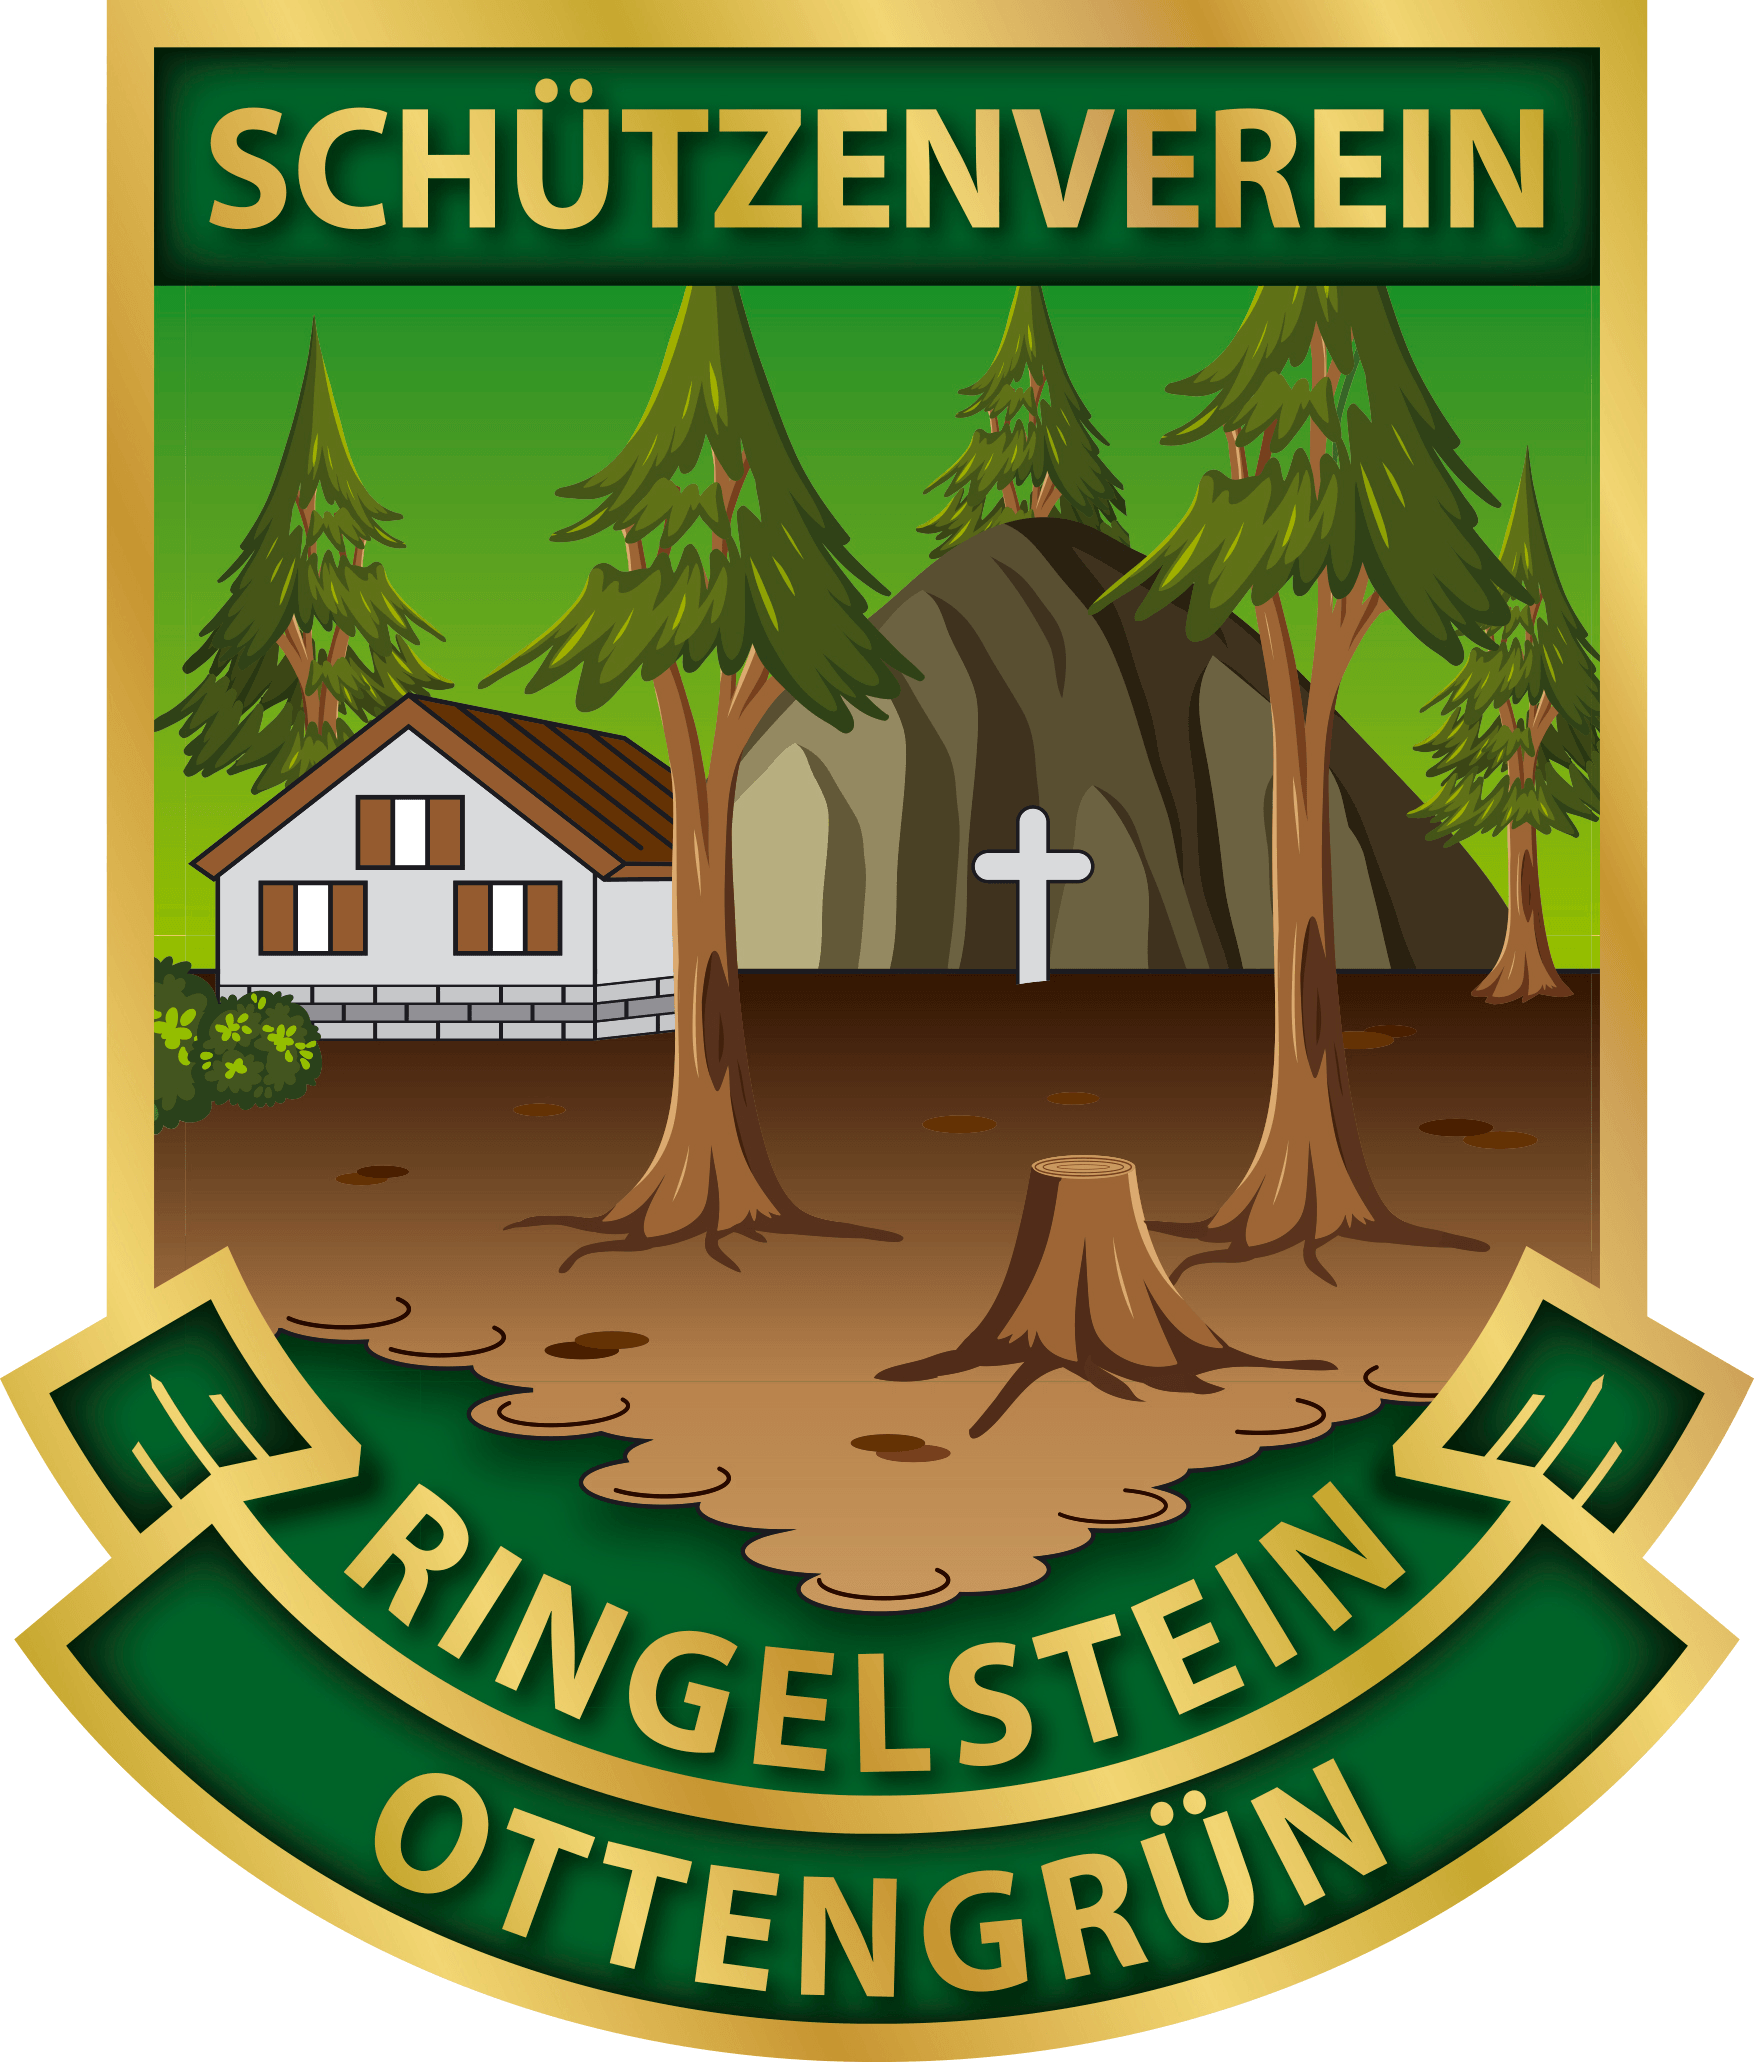 Schützenverein Ringelstein Ottengrün e.V.